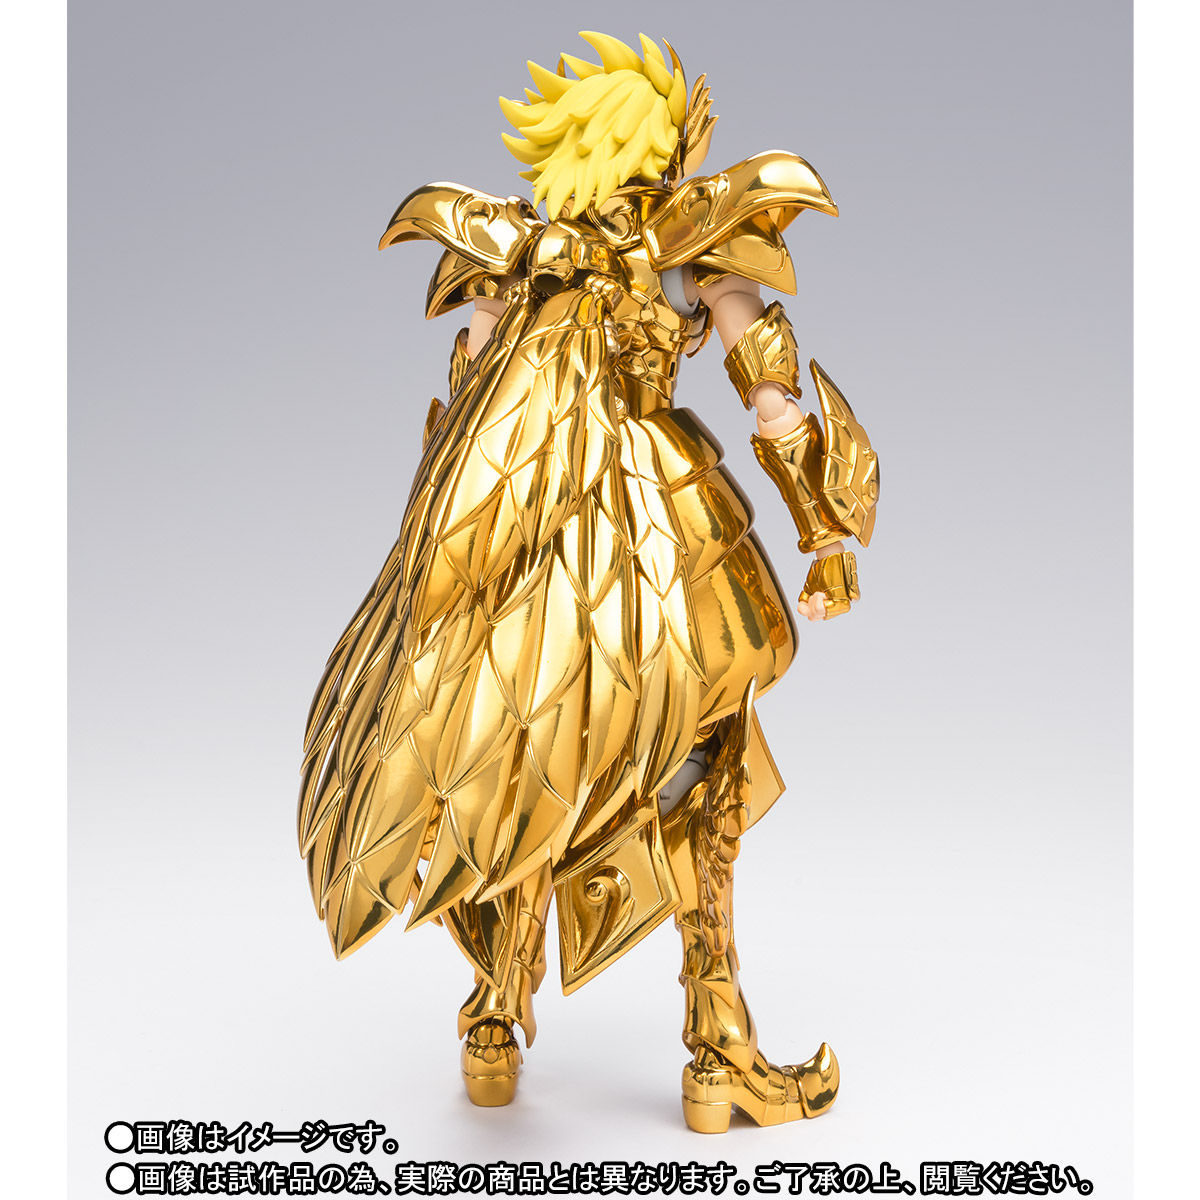 【新品・未開封】聖闘士聖衣神話EX 十三番目の黄金聖闘士輸送箱からも出していません